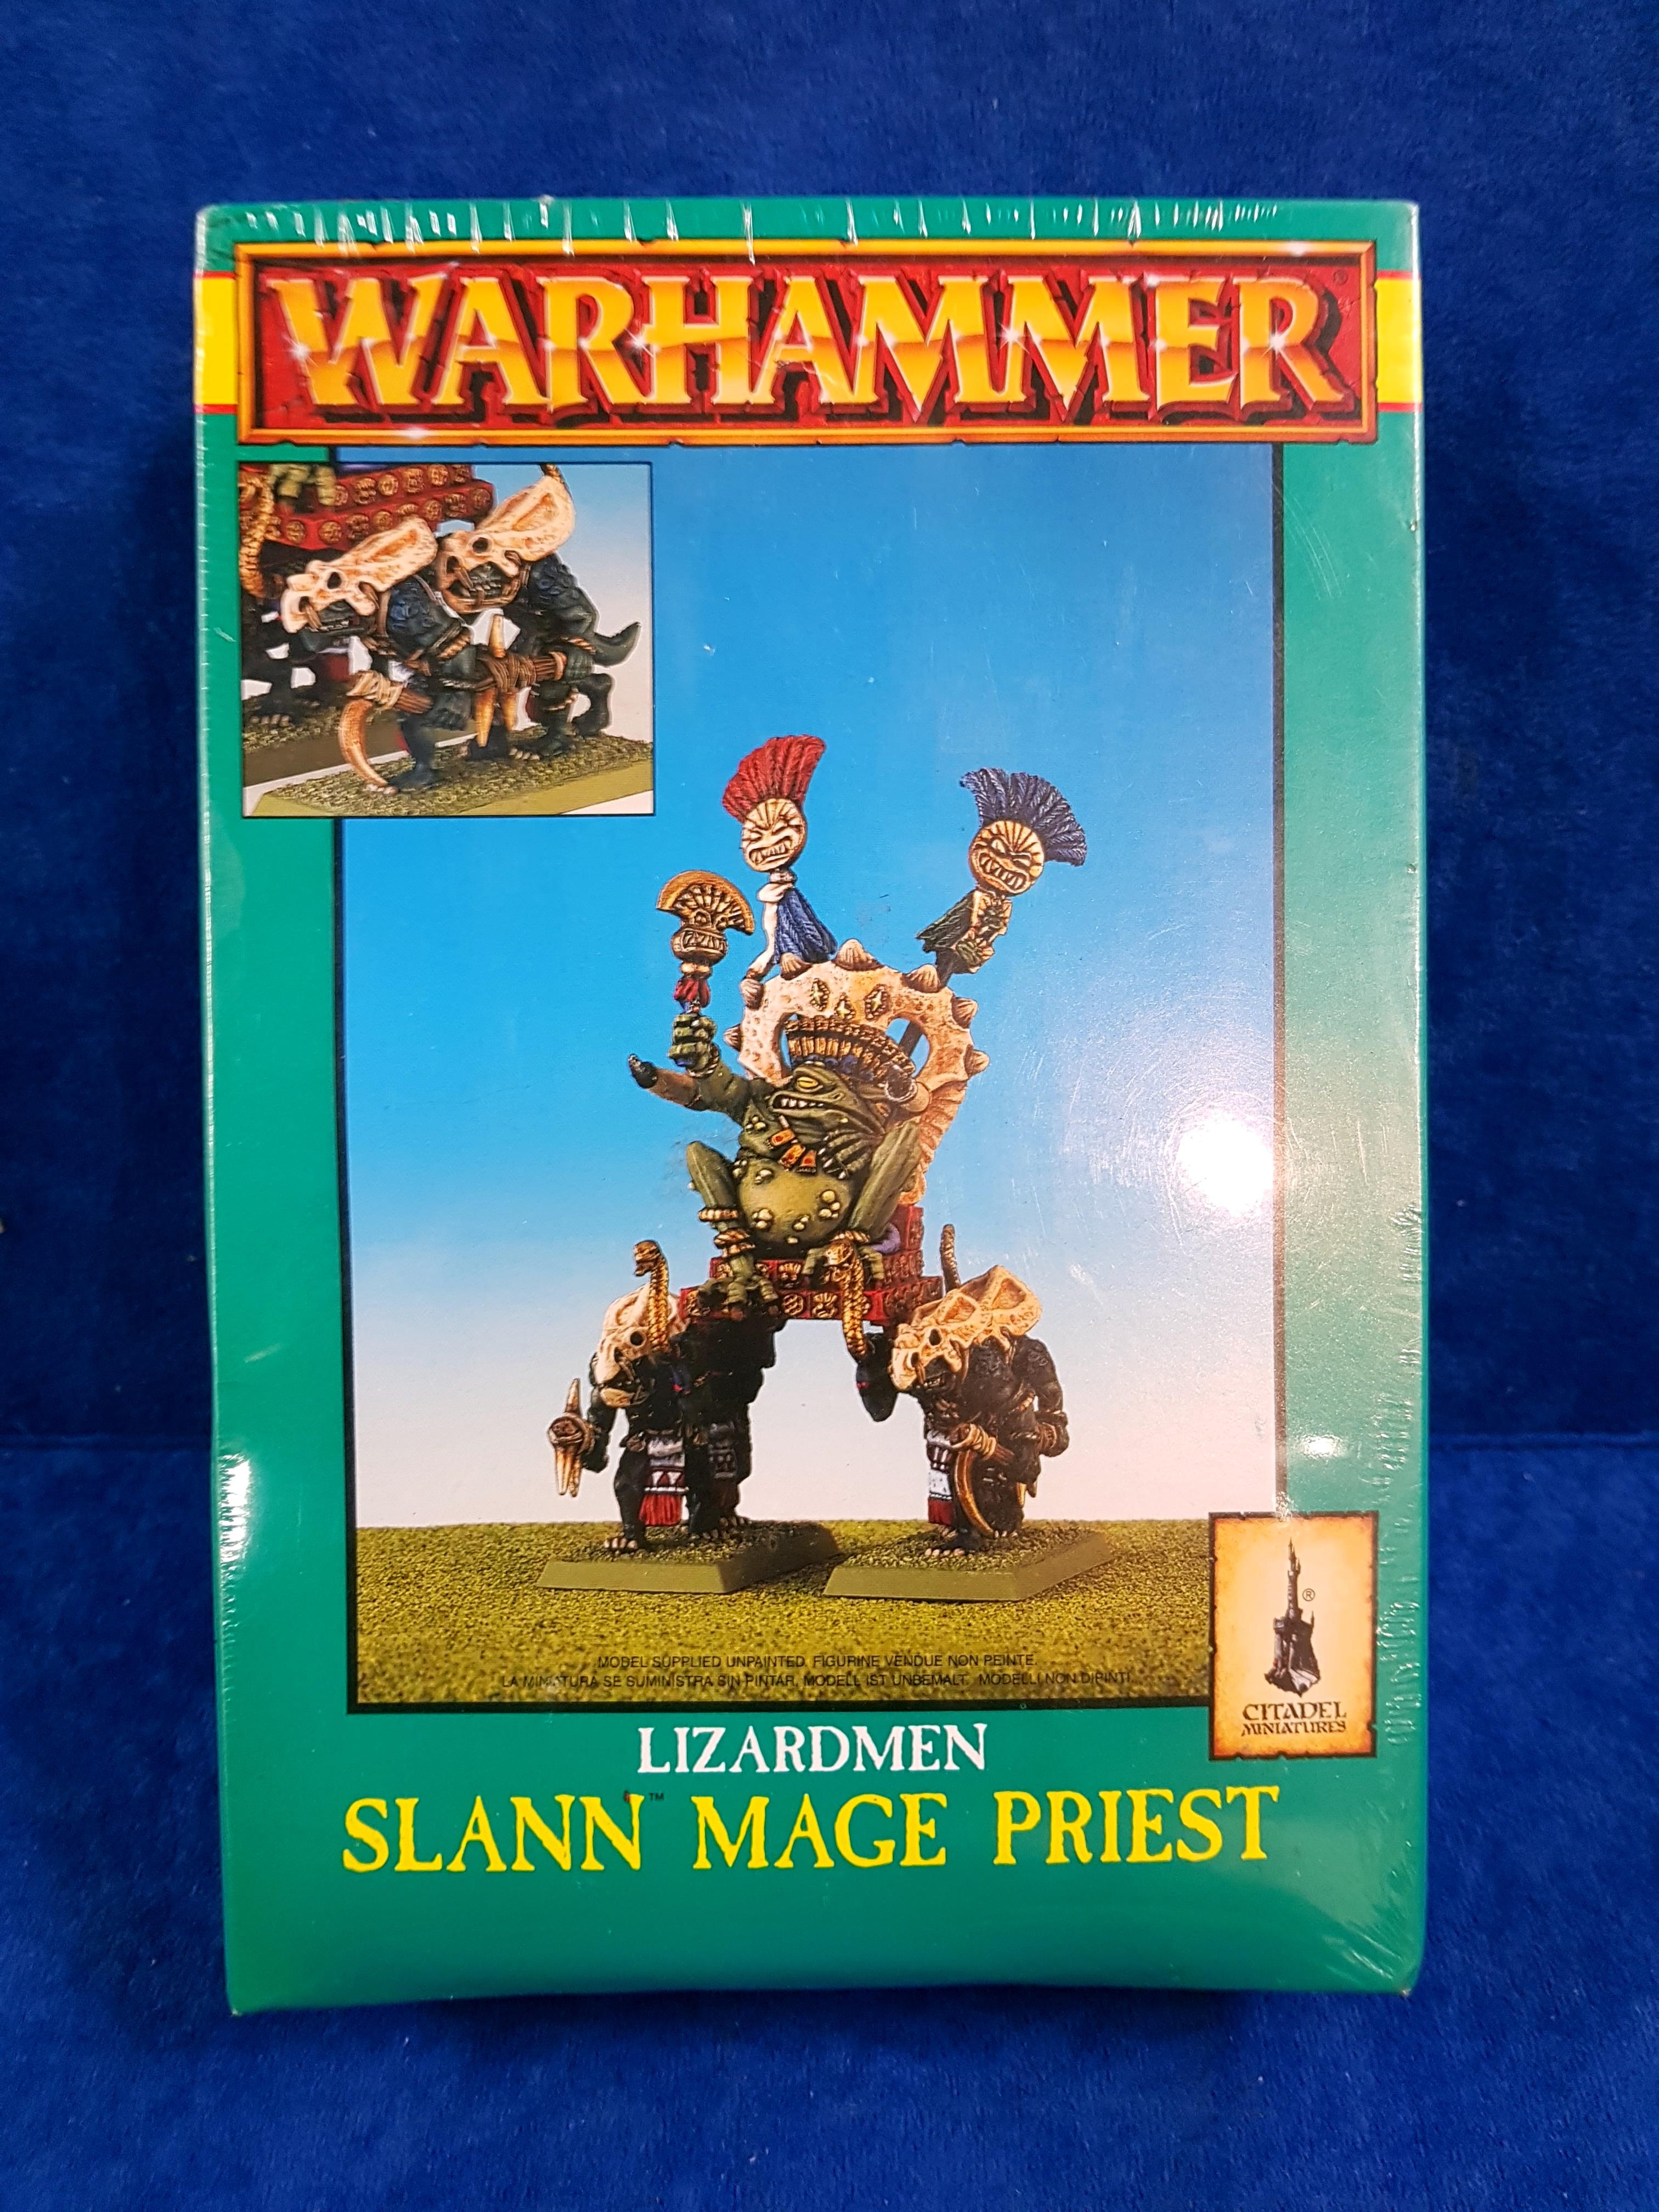 WARHAMMER - SLANN MAGE PRIEST